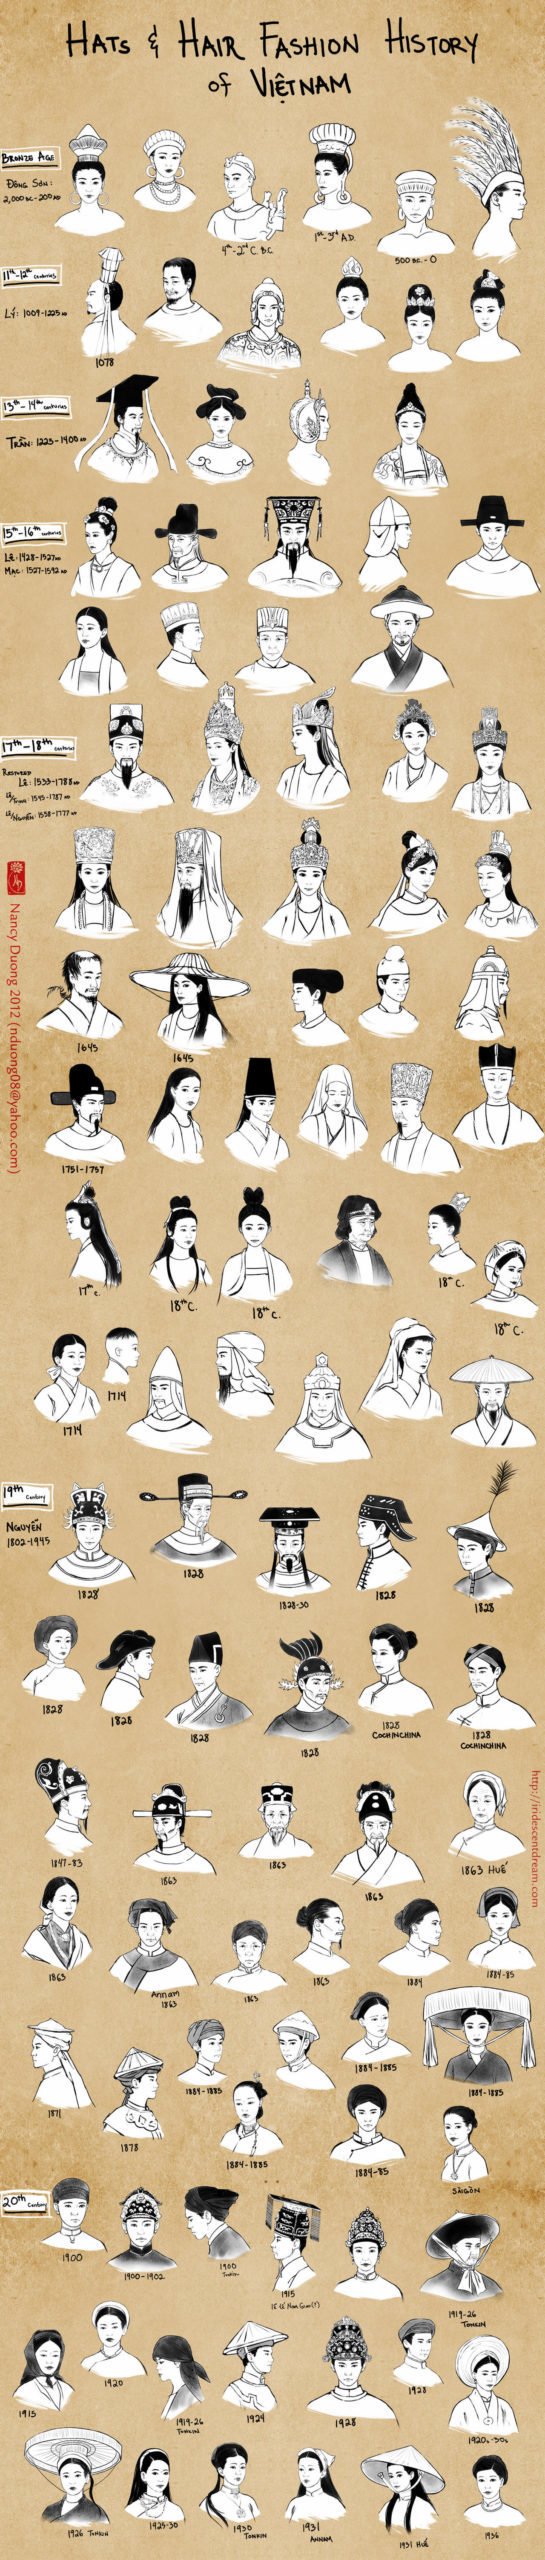 越南–帽子和头发的时尚历史